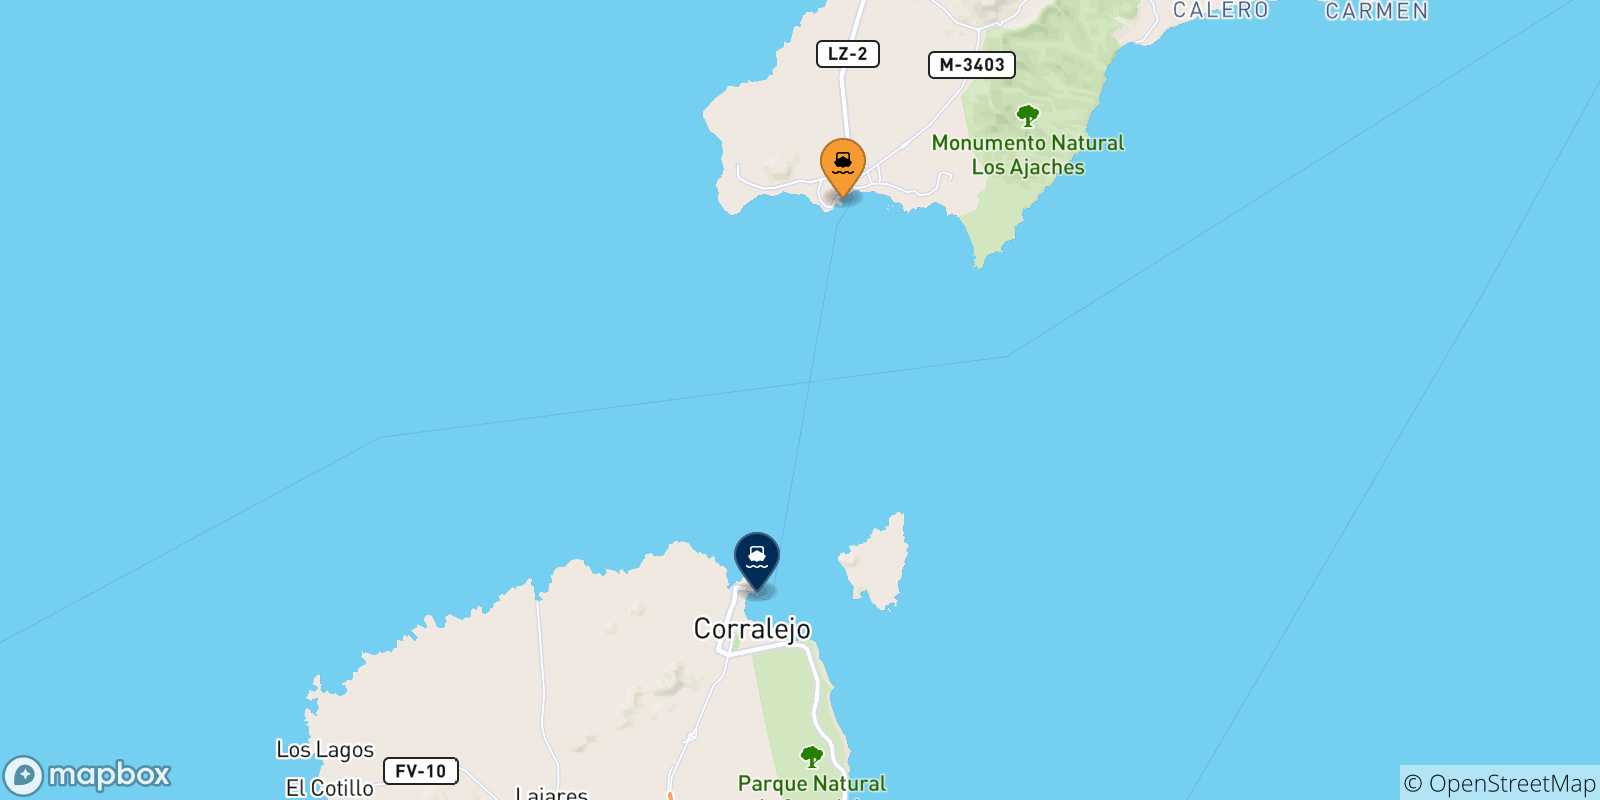 Mappa delle possibili rotte tra la Spagna e Corralejo (Fuerteventura)